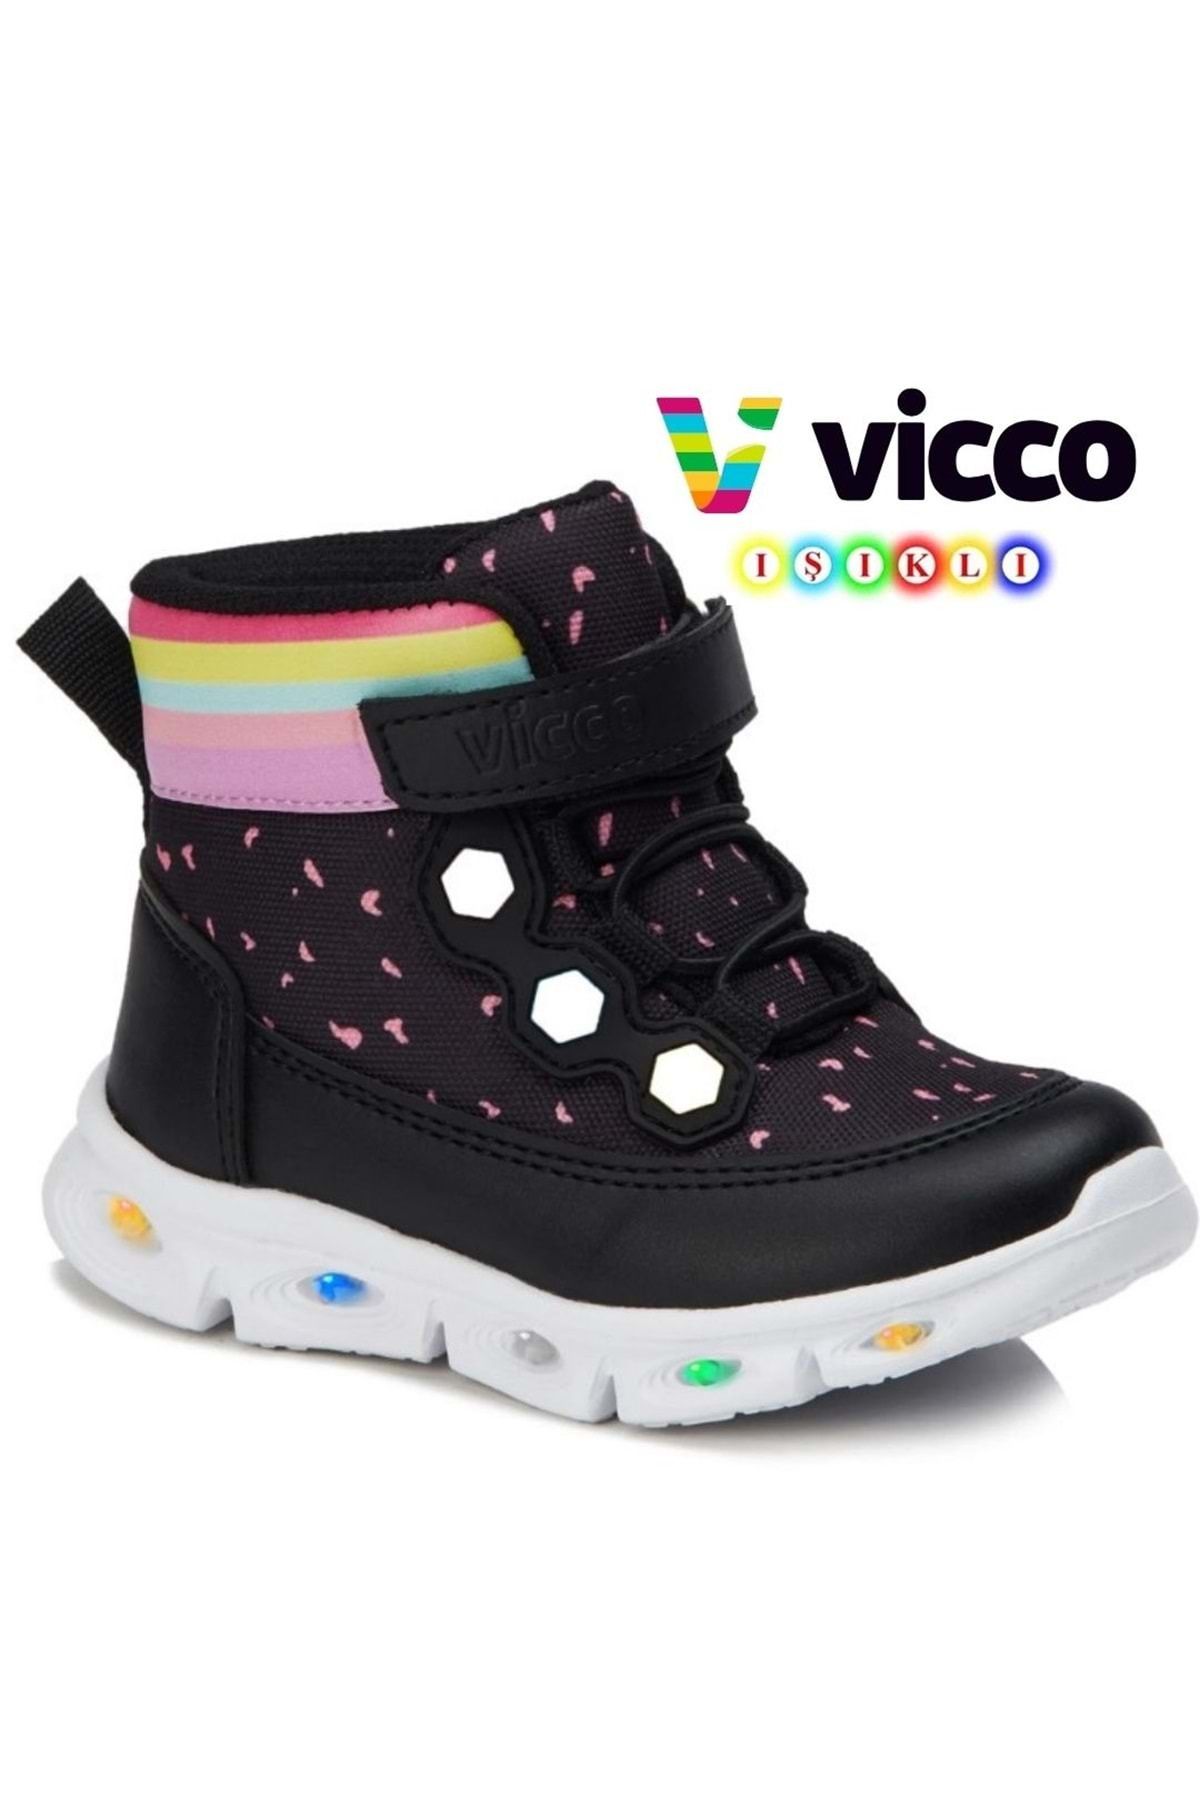 Vicco Mizu Işıklı Phylon Taban Ortopedik Çocuk Boğazlı Spor Ayakkabı Siyah-pembe